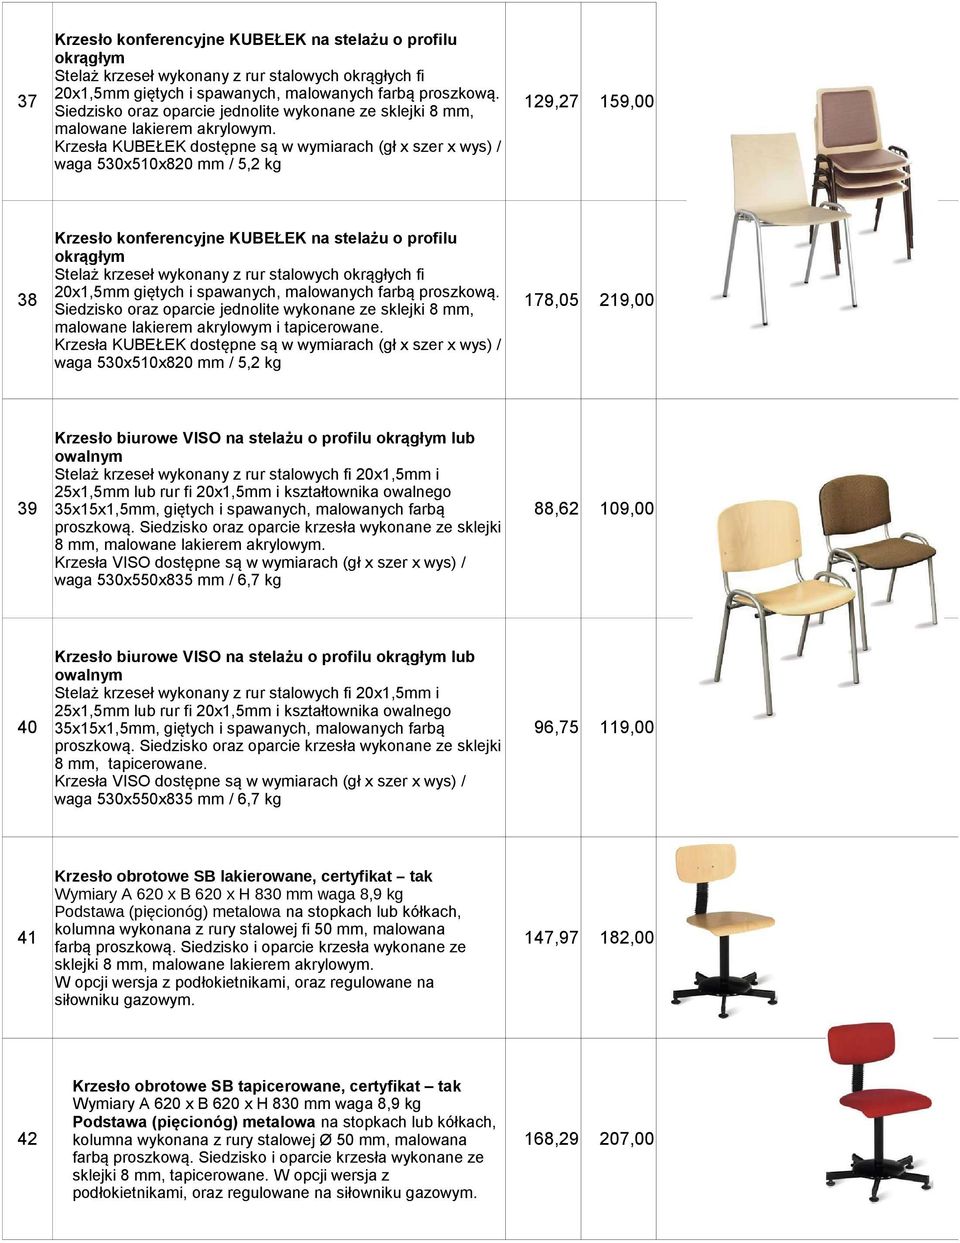 Krzesła KUBEŁEK dostępne są w wymiarach (gł x szer x wys) / waga 530x510x820 mm / 5,2 kg Krzesło konferencyjne KUBEŁEK na stelażu o profilu okrągłym 38 20x1,5mm giętych i spawanych, malowanych farbą